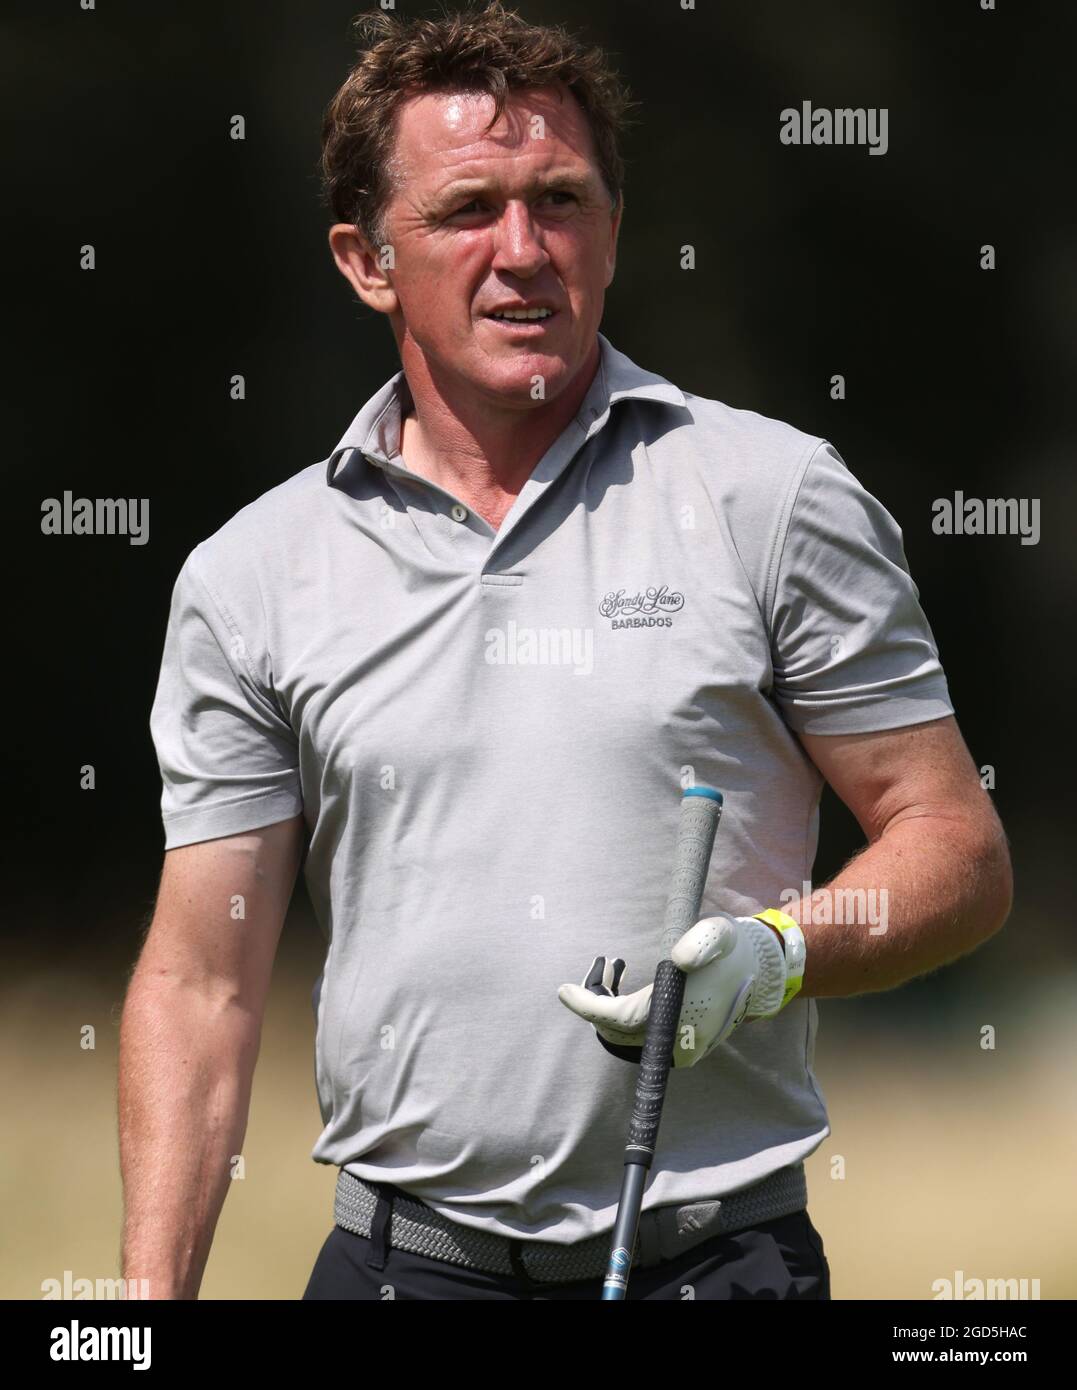 AP McCoy am 18. Während eines Vorschauungstages vor dem Cazoo Classic im London Golf Club in Ash, Kent. Bilddatum: Mittwoch, 11. August 2021. Stockfoto